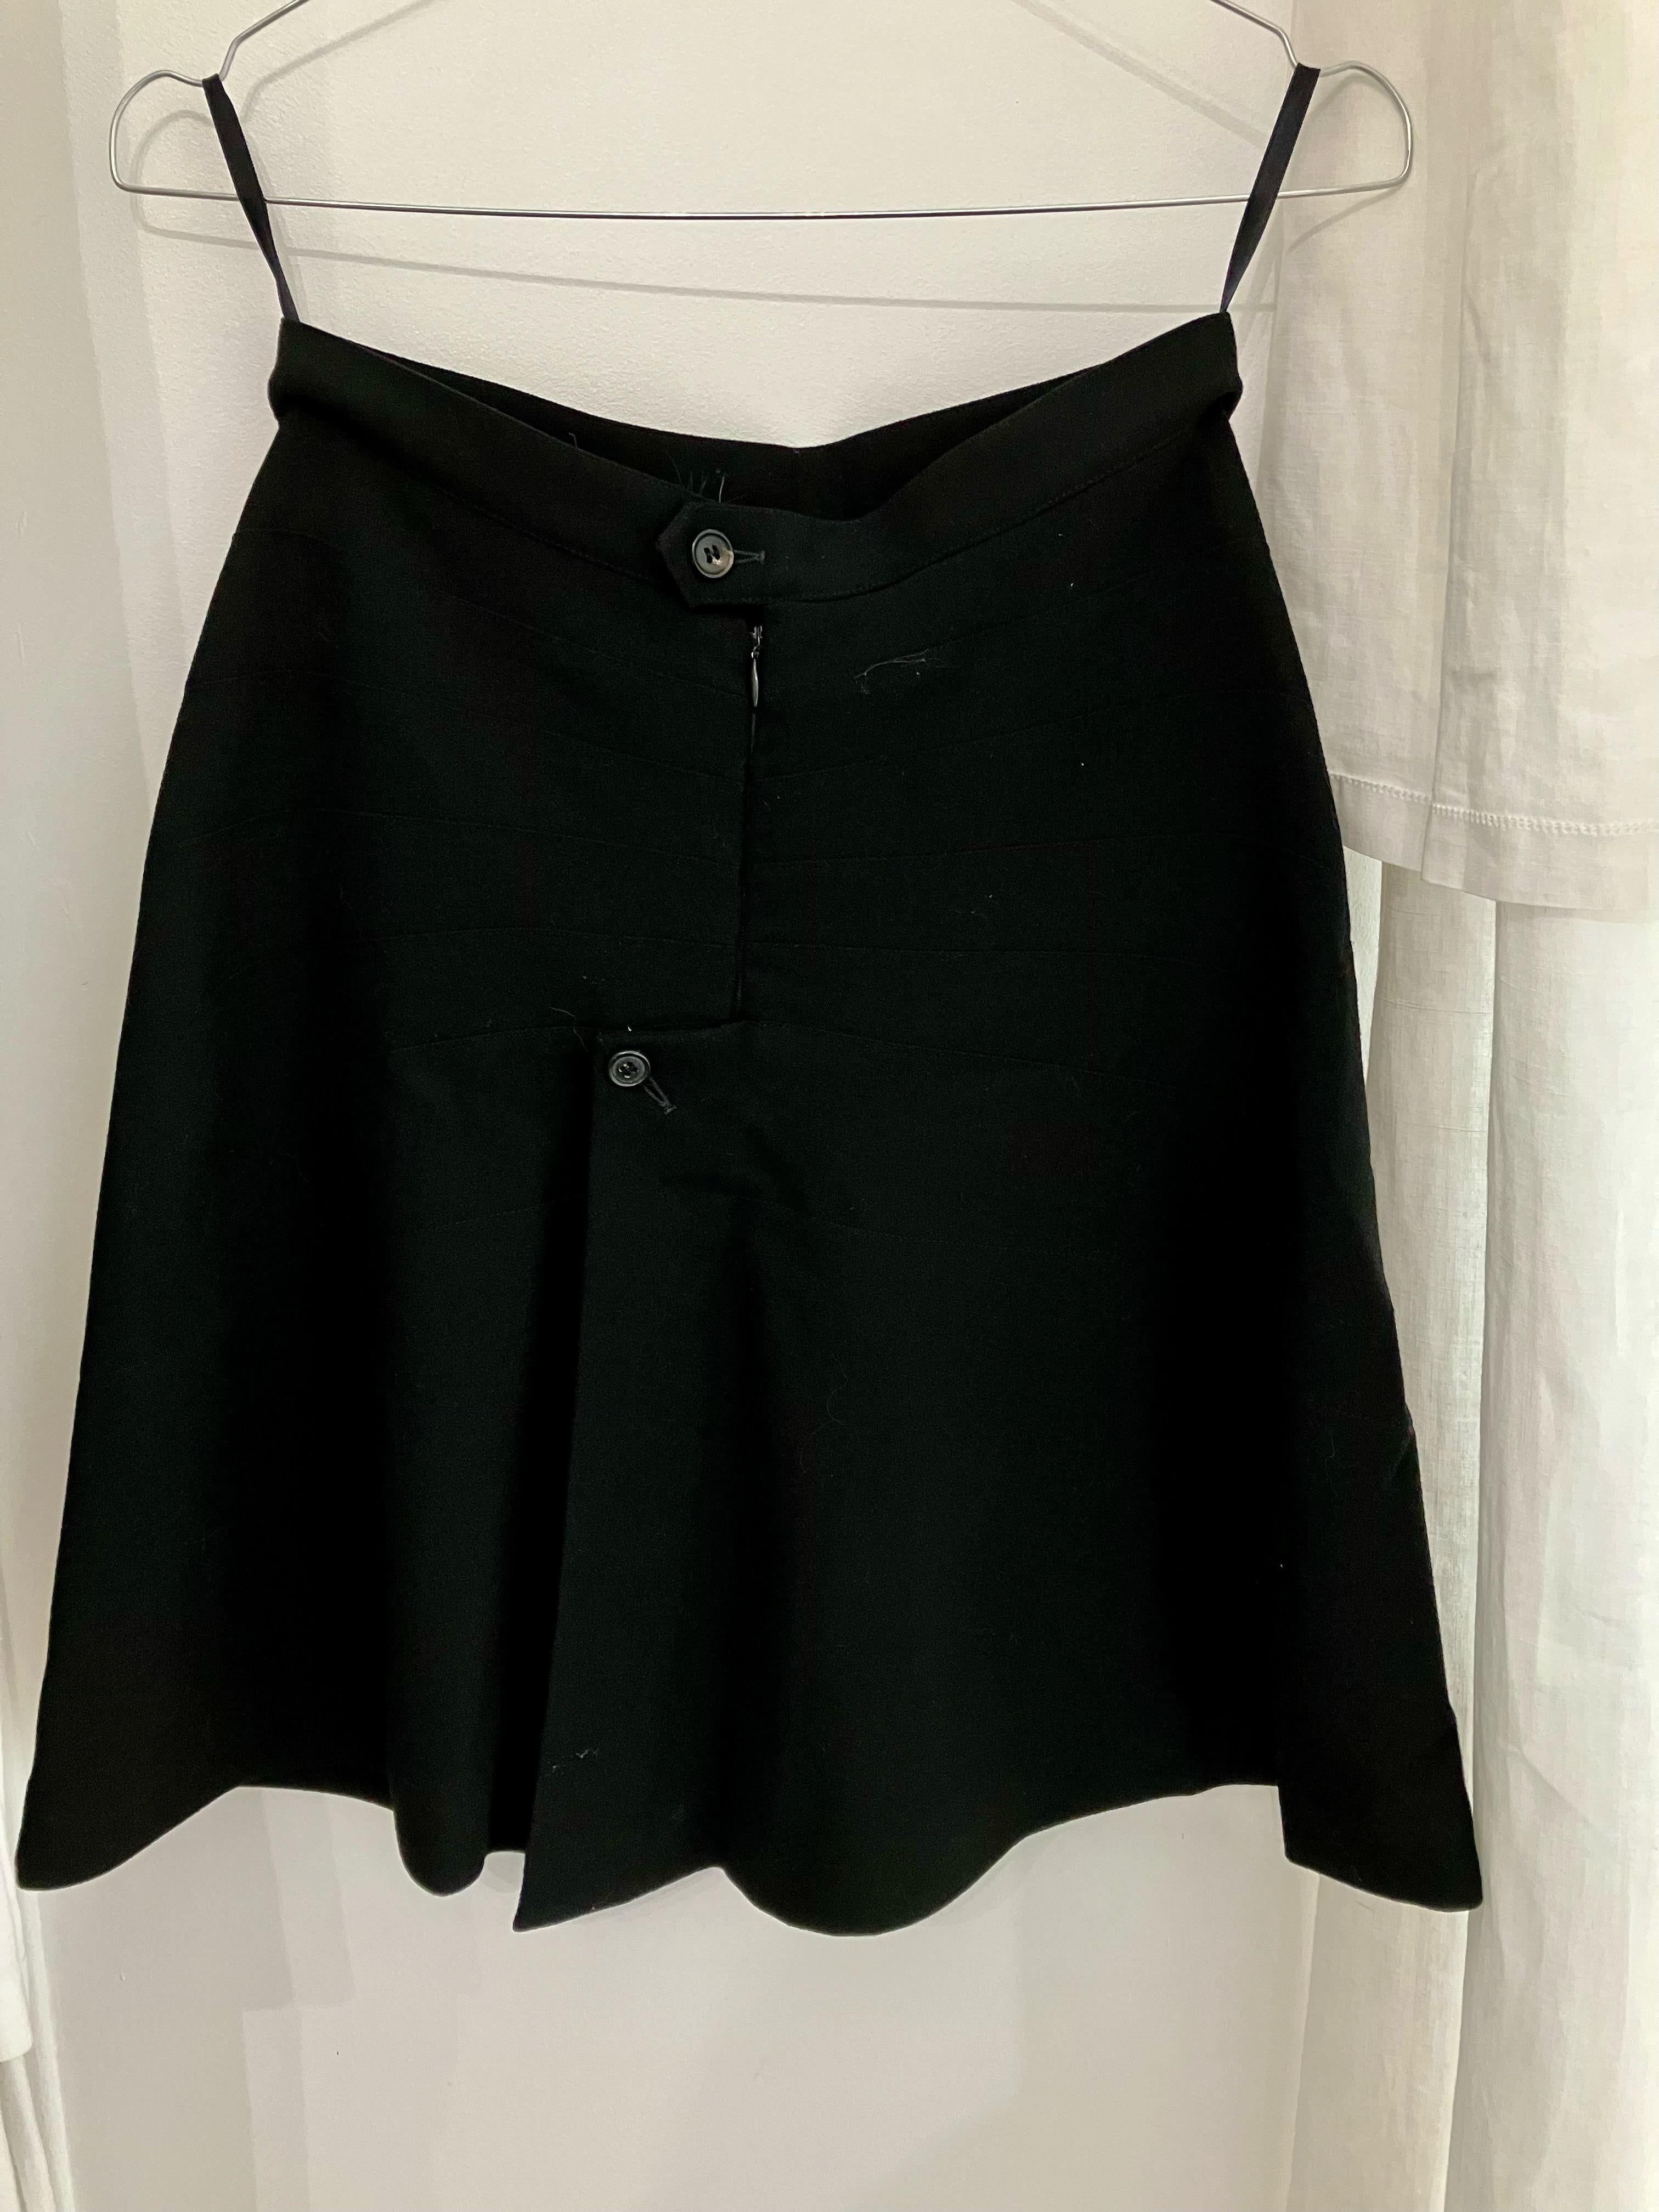 1991 Alaia Black Skirt Suit Butterflies Tribute to Elsa Schiaparelli  For Sale 7